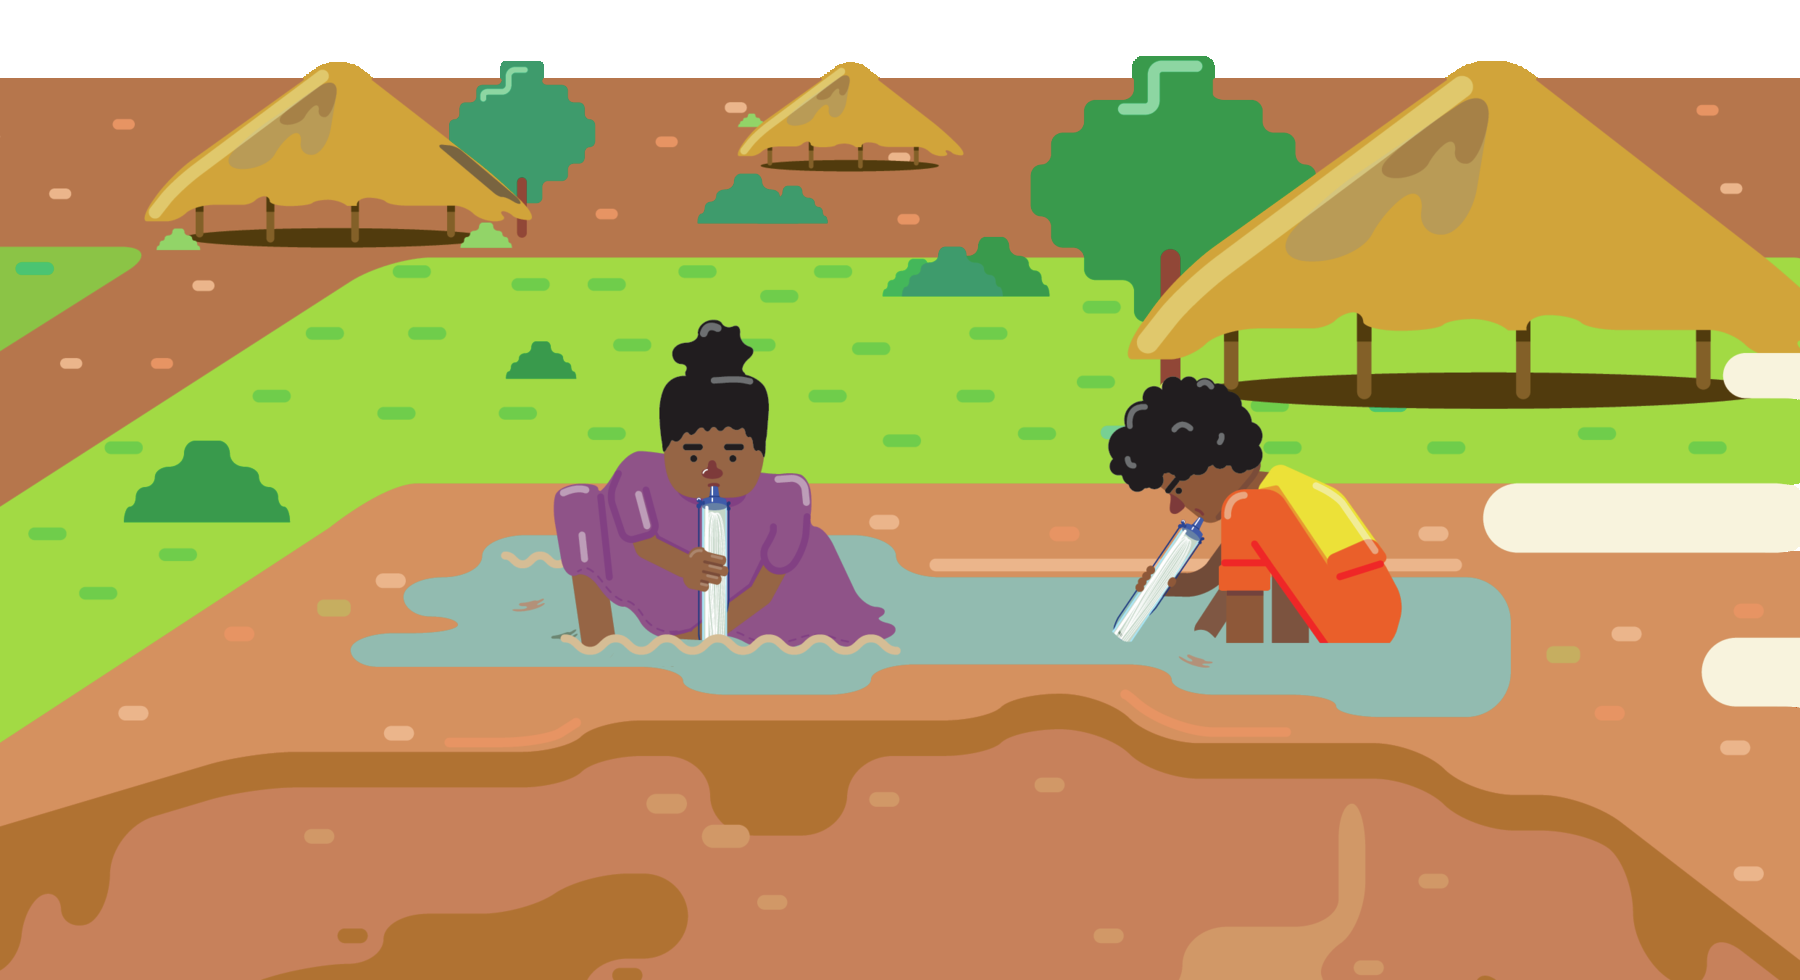 Ilustração. Uma mulher e um garotinho abaixados em um lago. Eles seguram estruturas cilíndricas em suas bocas. Ao fundo, habitações e árvores entre vegetação rasteira.